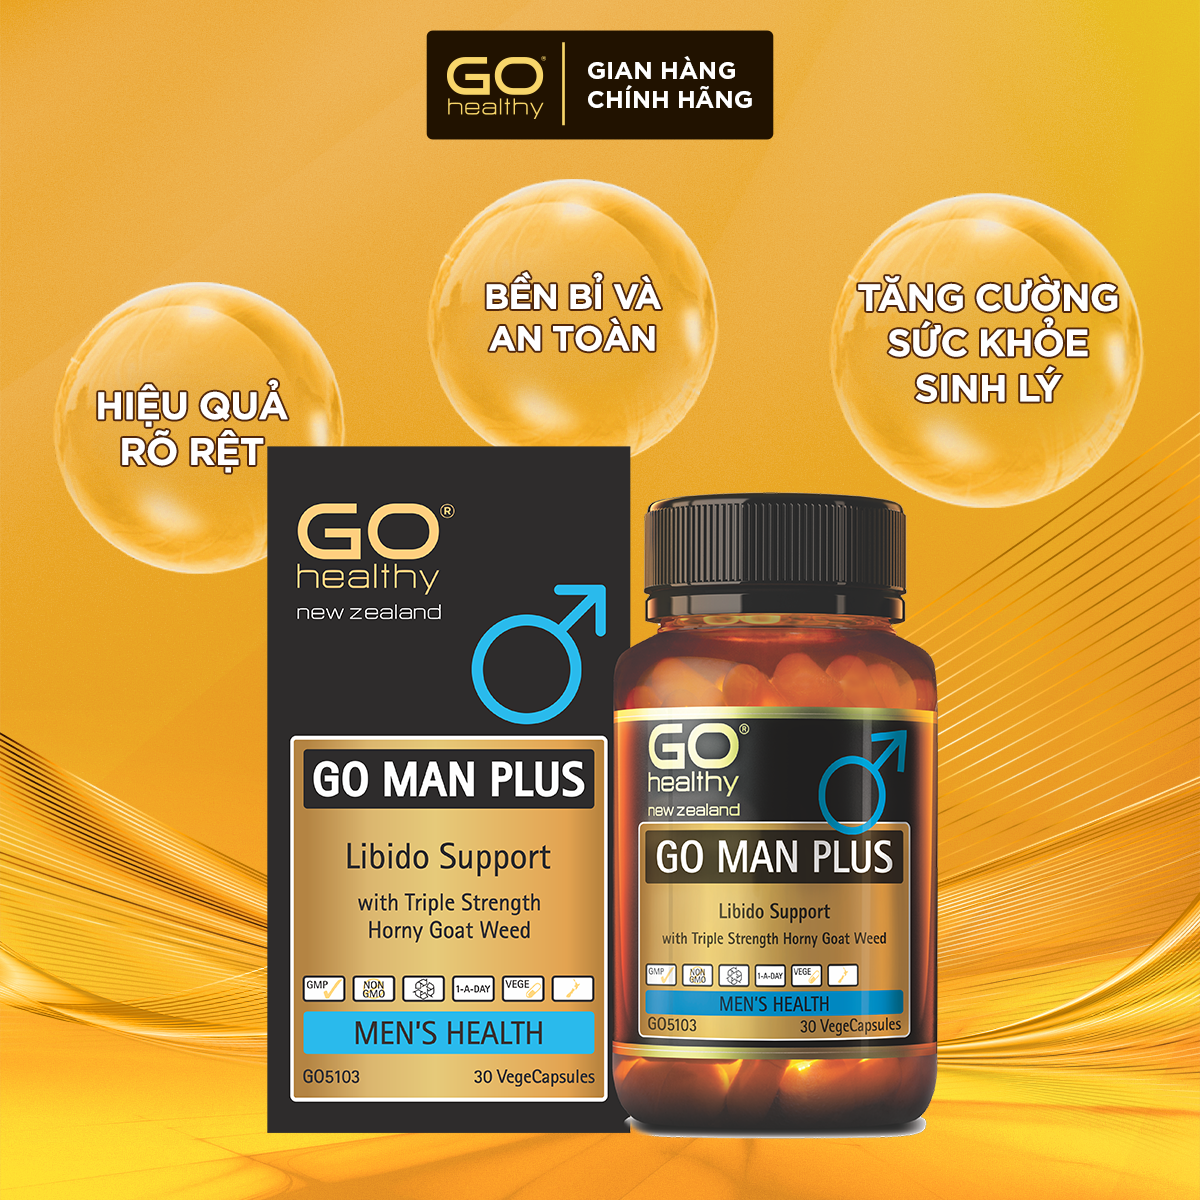 GO CELERY 16,000 60 VIÊN- Viên gout nhập khẩu chính hãng GO Healthy New Zealand